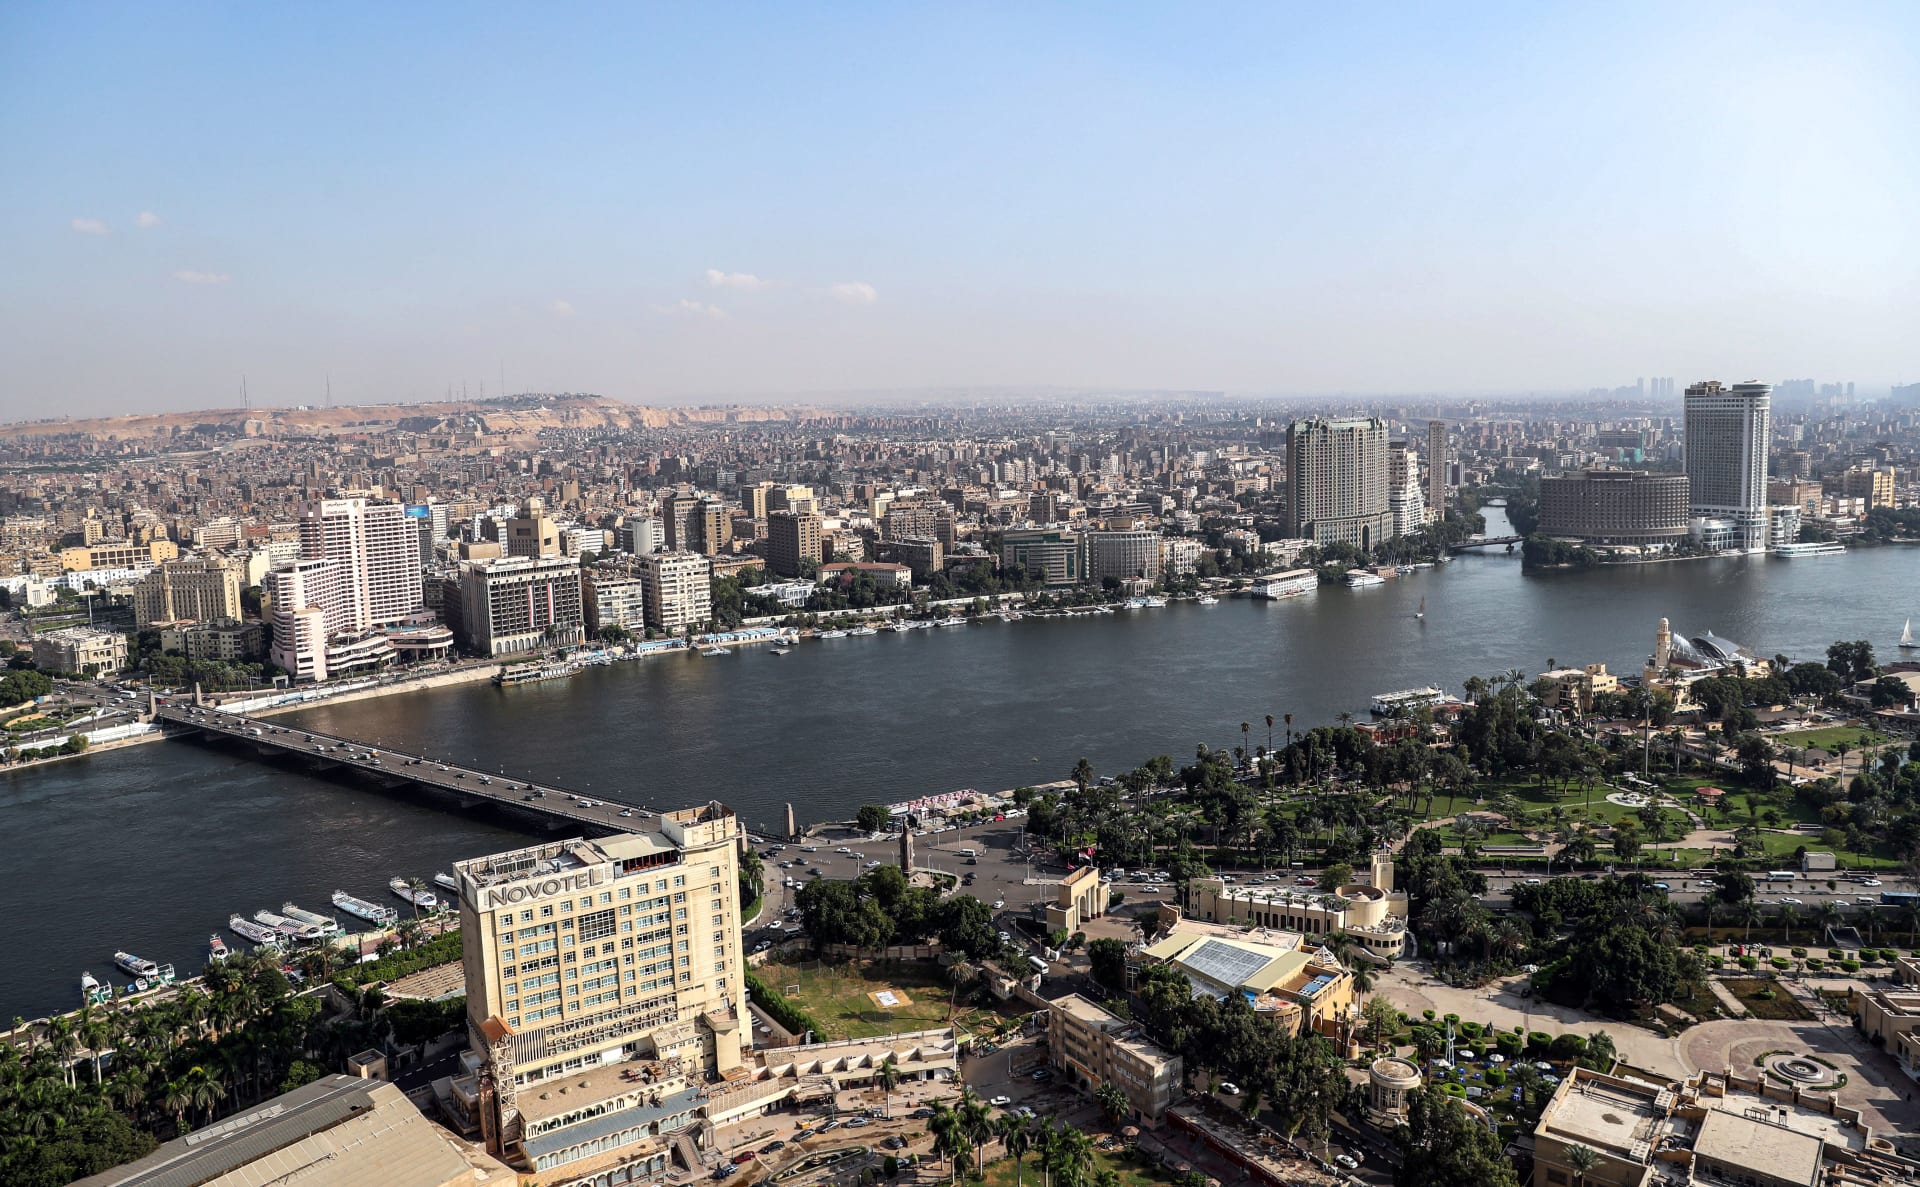 الحكومة المصرية تحذر من "الخروج من المنزل" بسبب الطقس السيئ